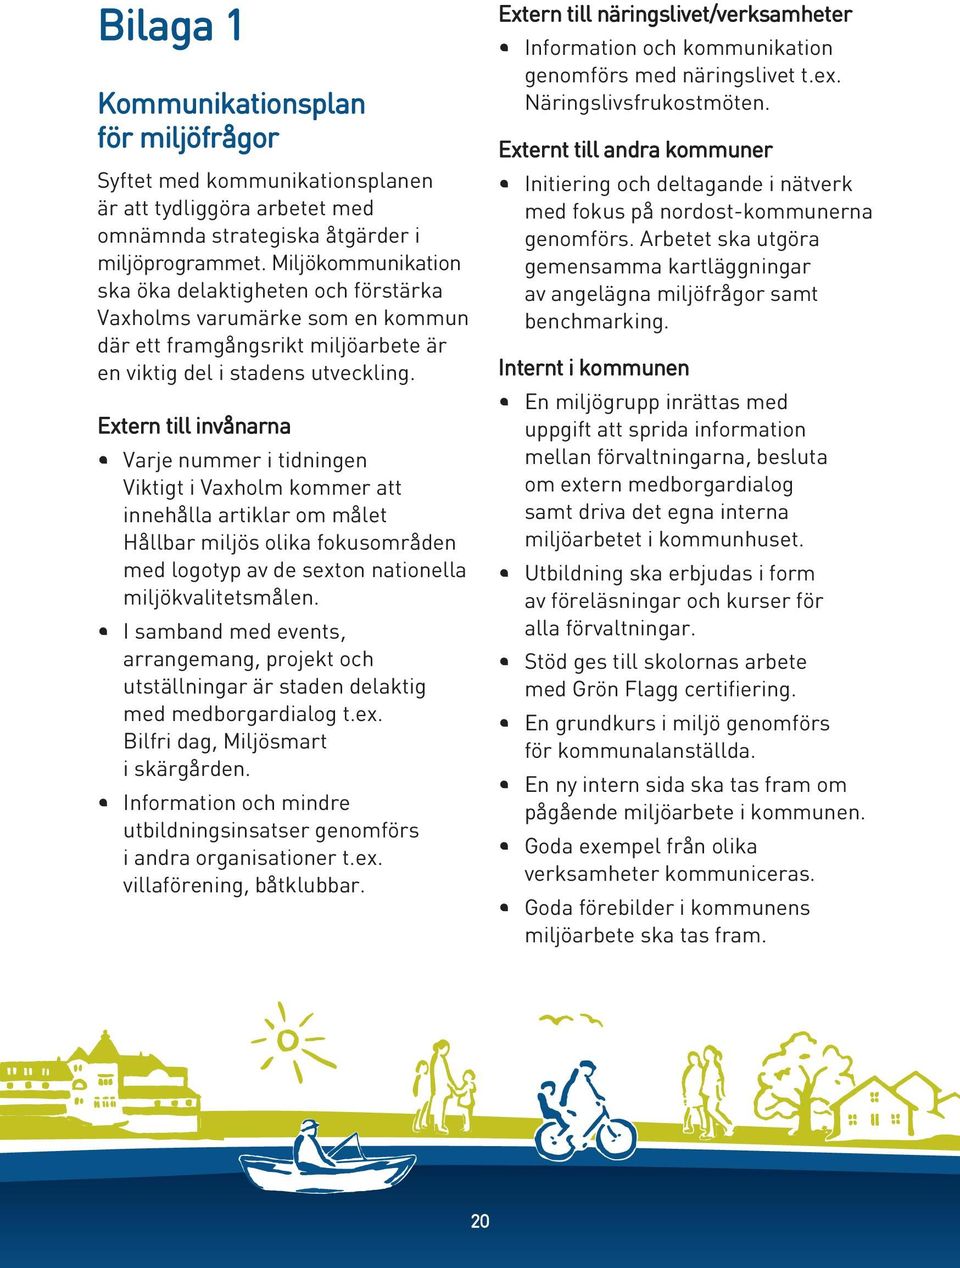 Extern till invånarna Varje nummer i tidningen Viktigt i Vaxholm kommer att innehålla artiklar om målet Hållbar miljös olika fokusområden med logotyp av de sexton nationella miljökvalitetsmålen.